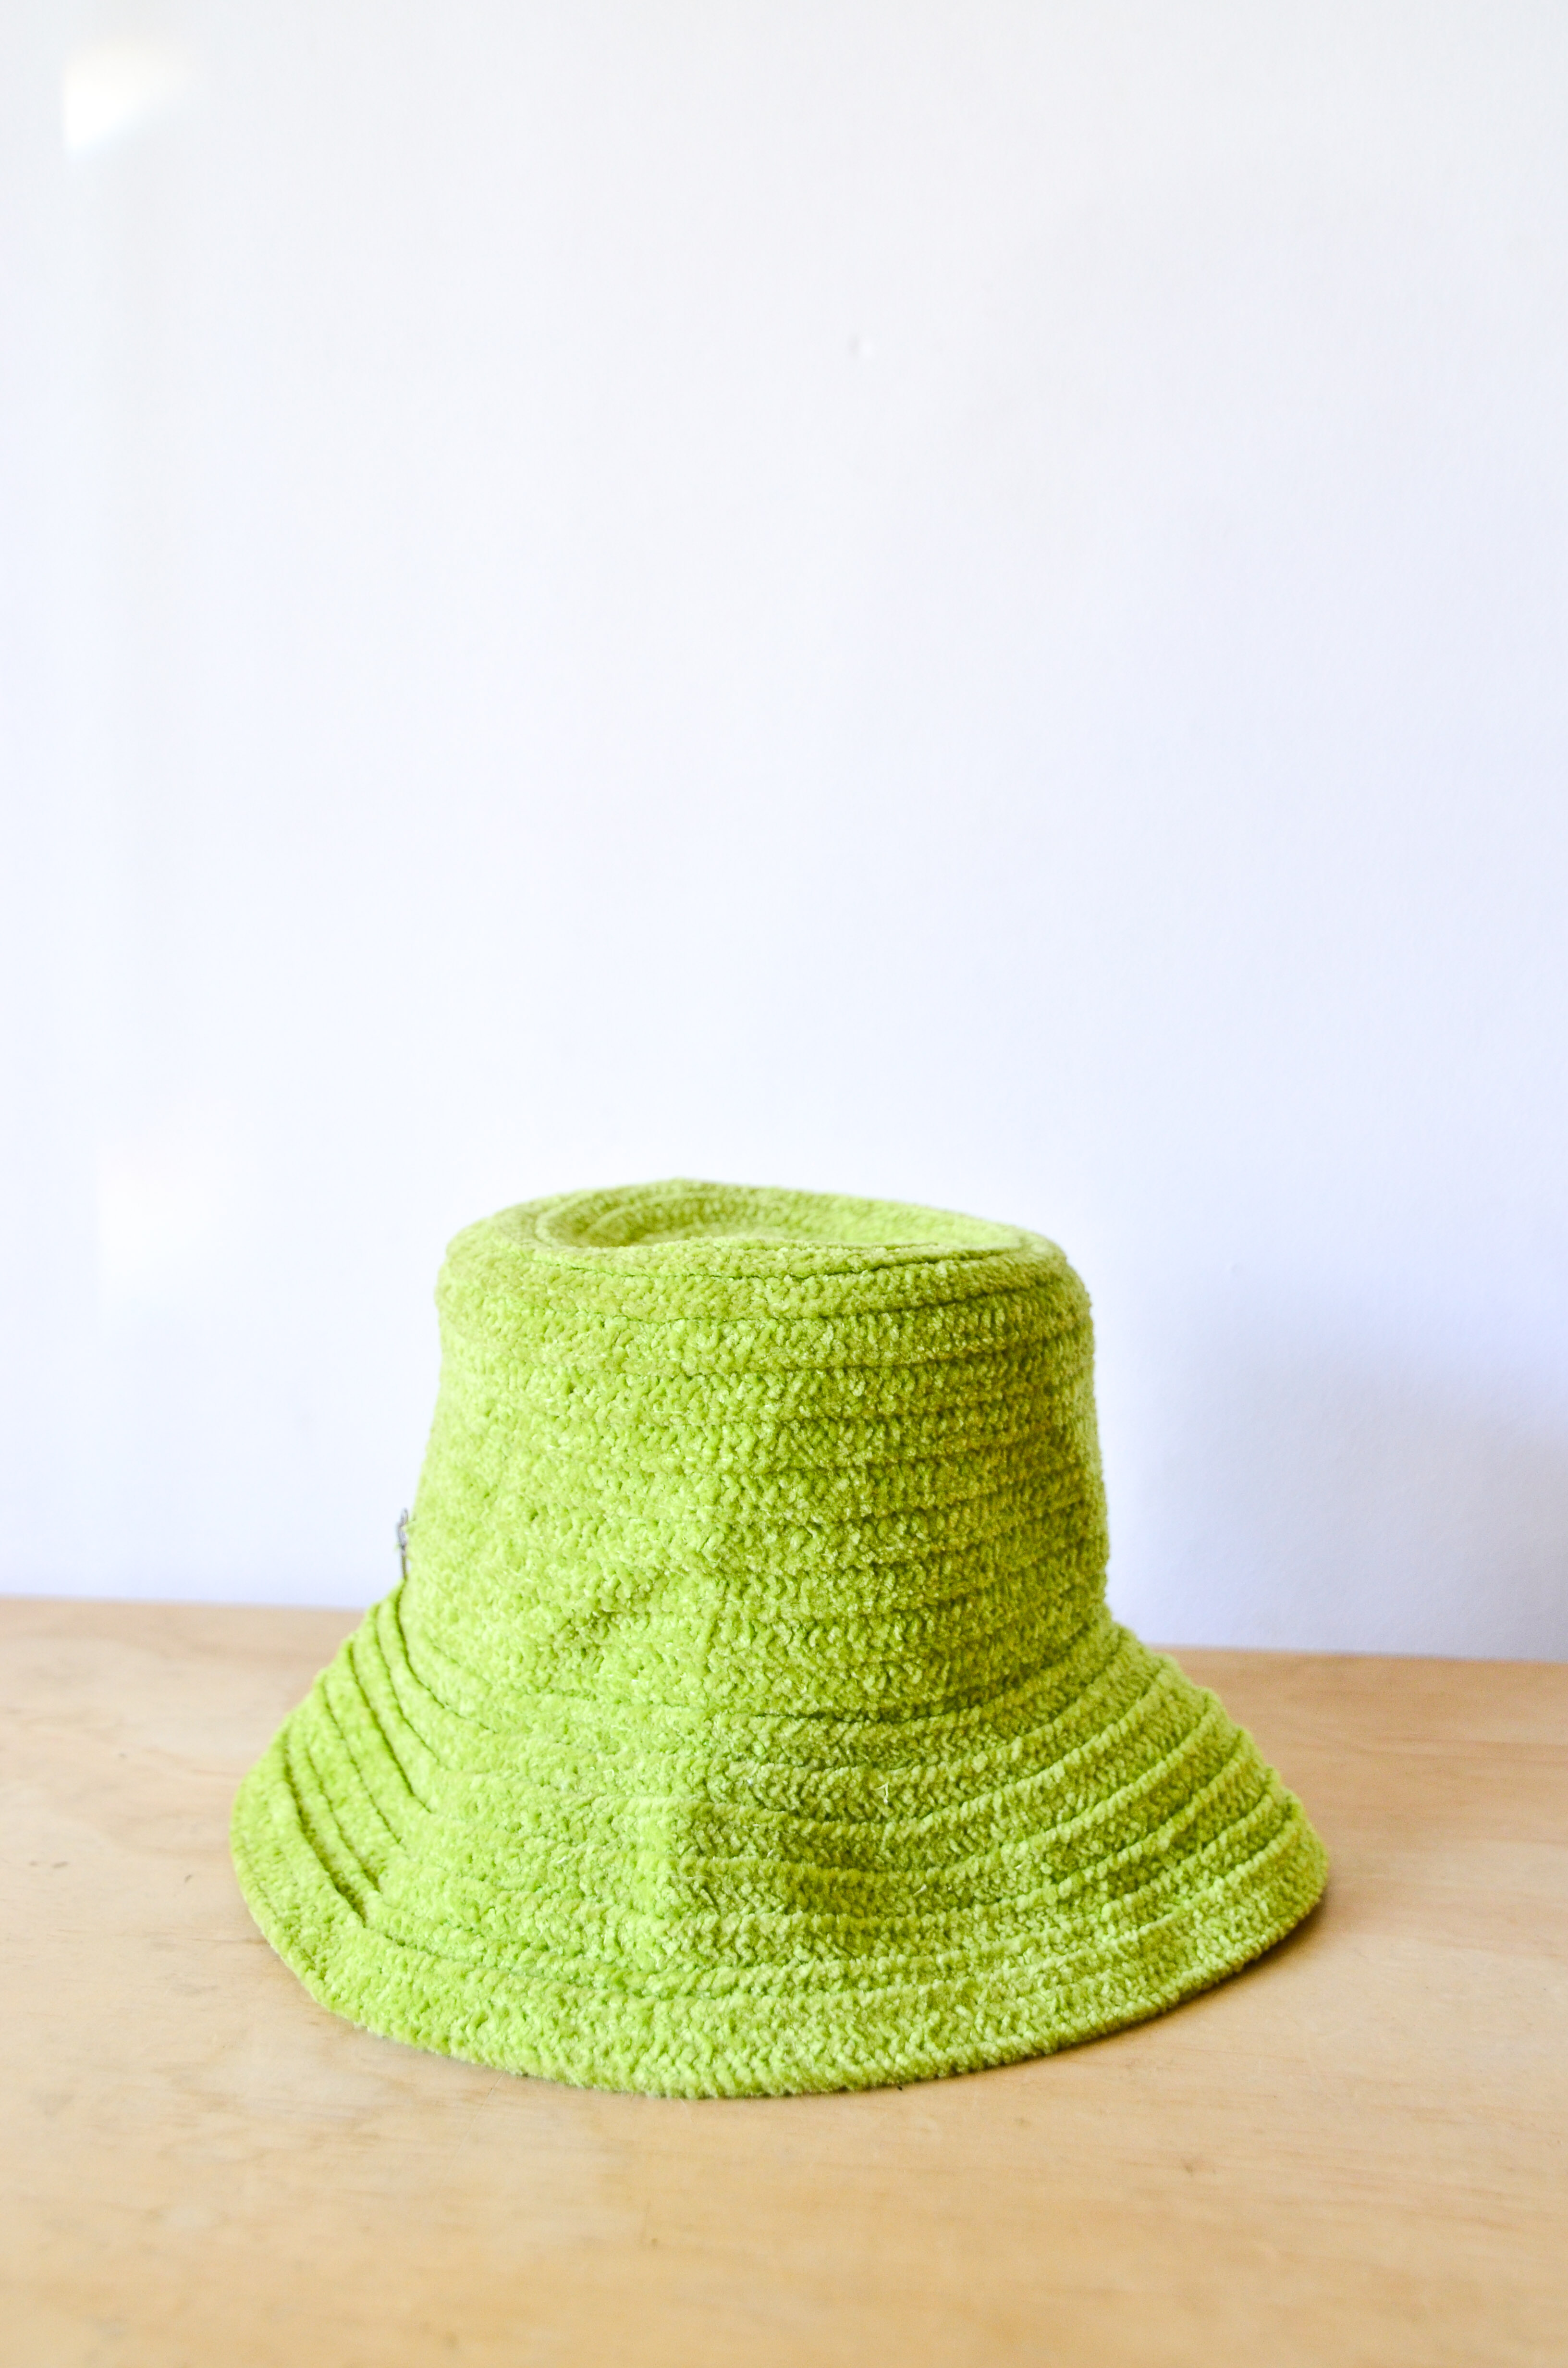 Sombrero green Phoebe